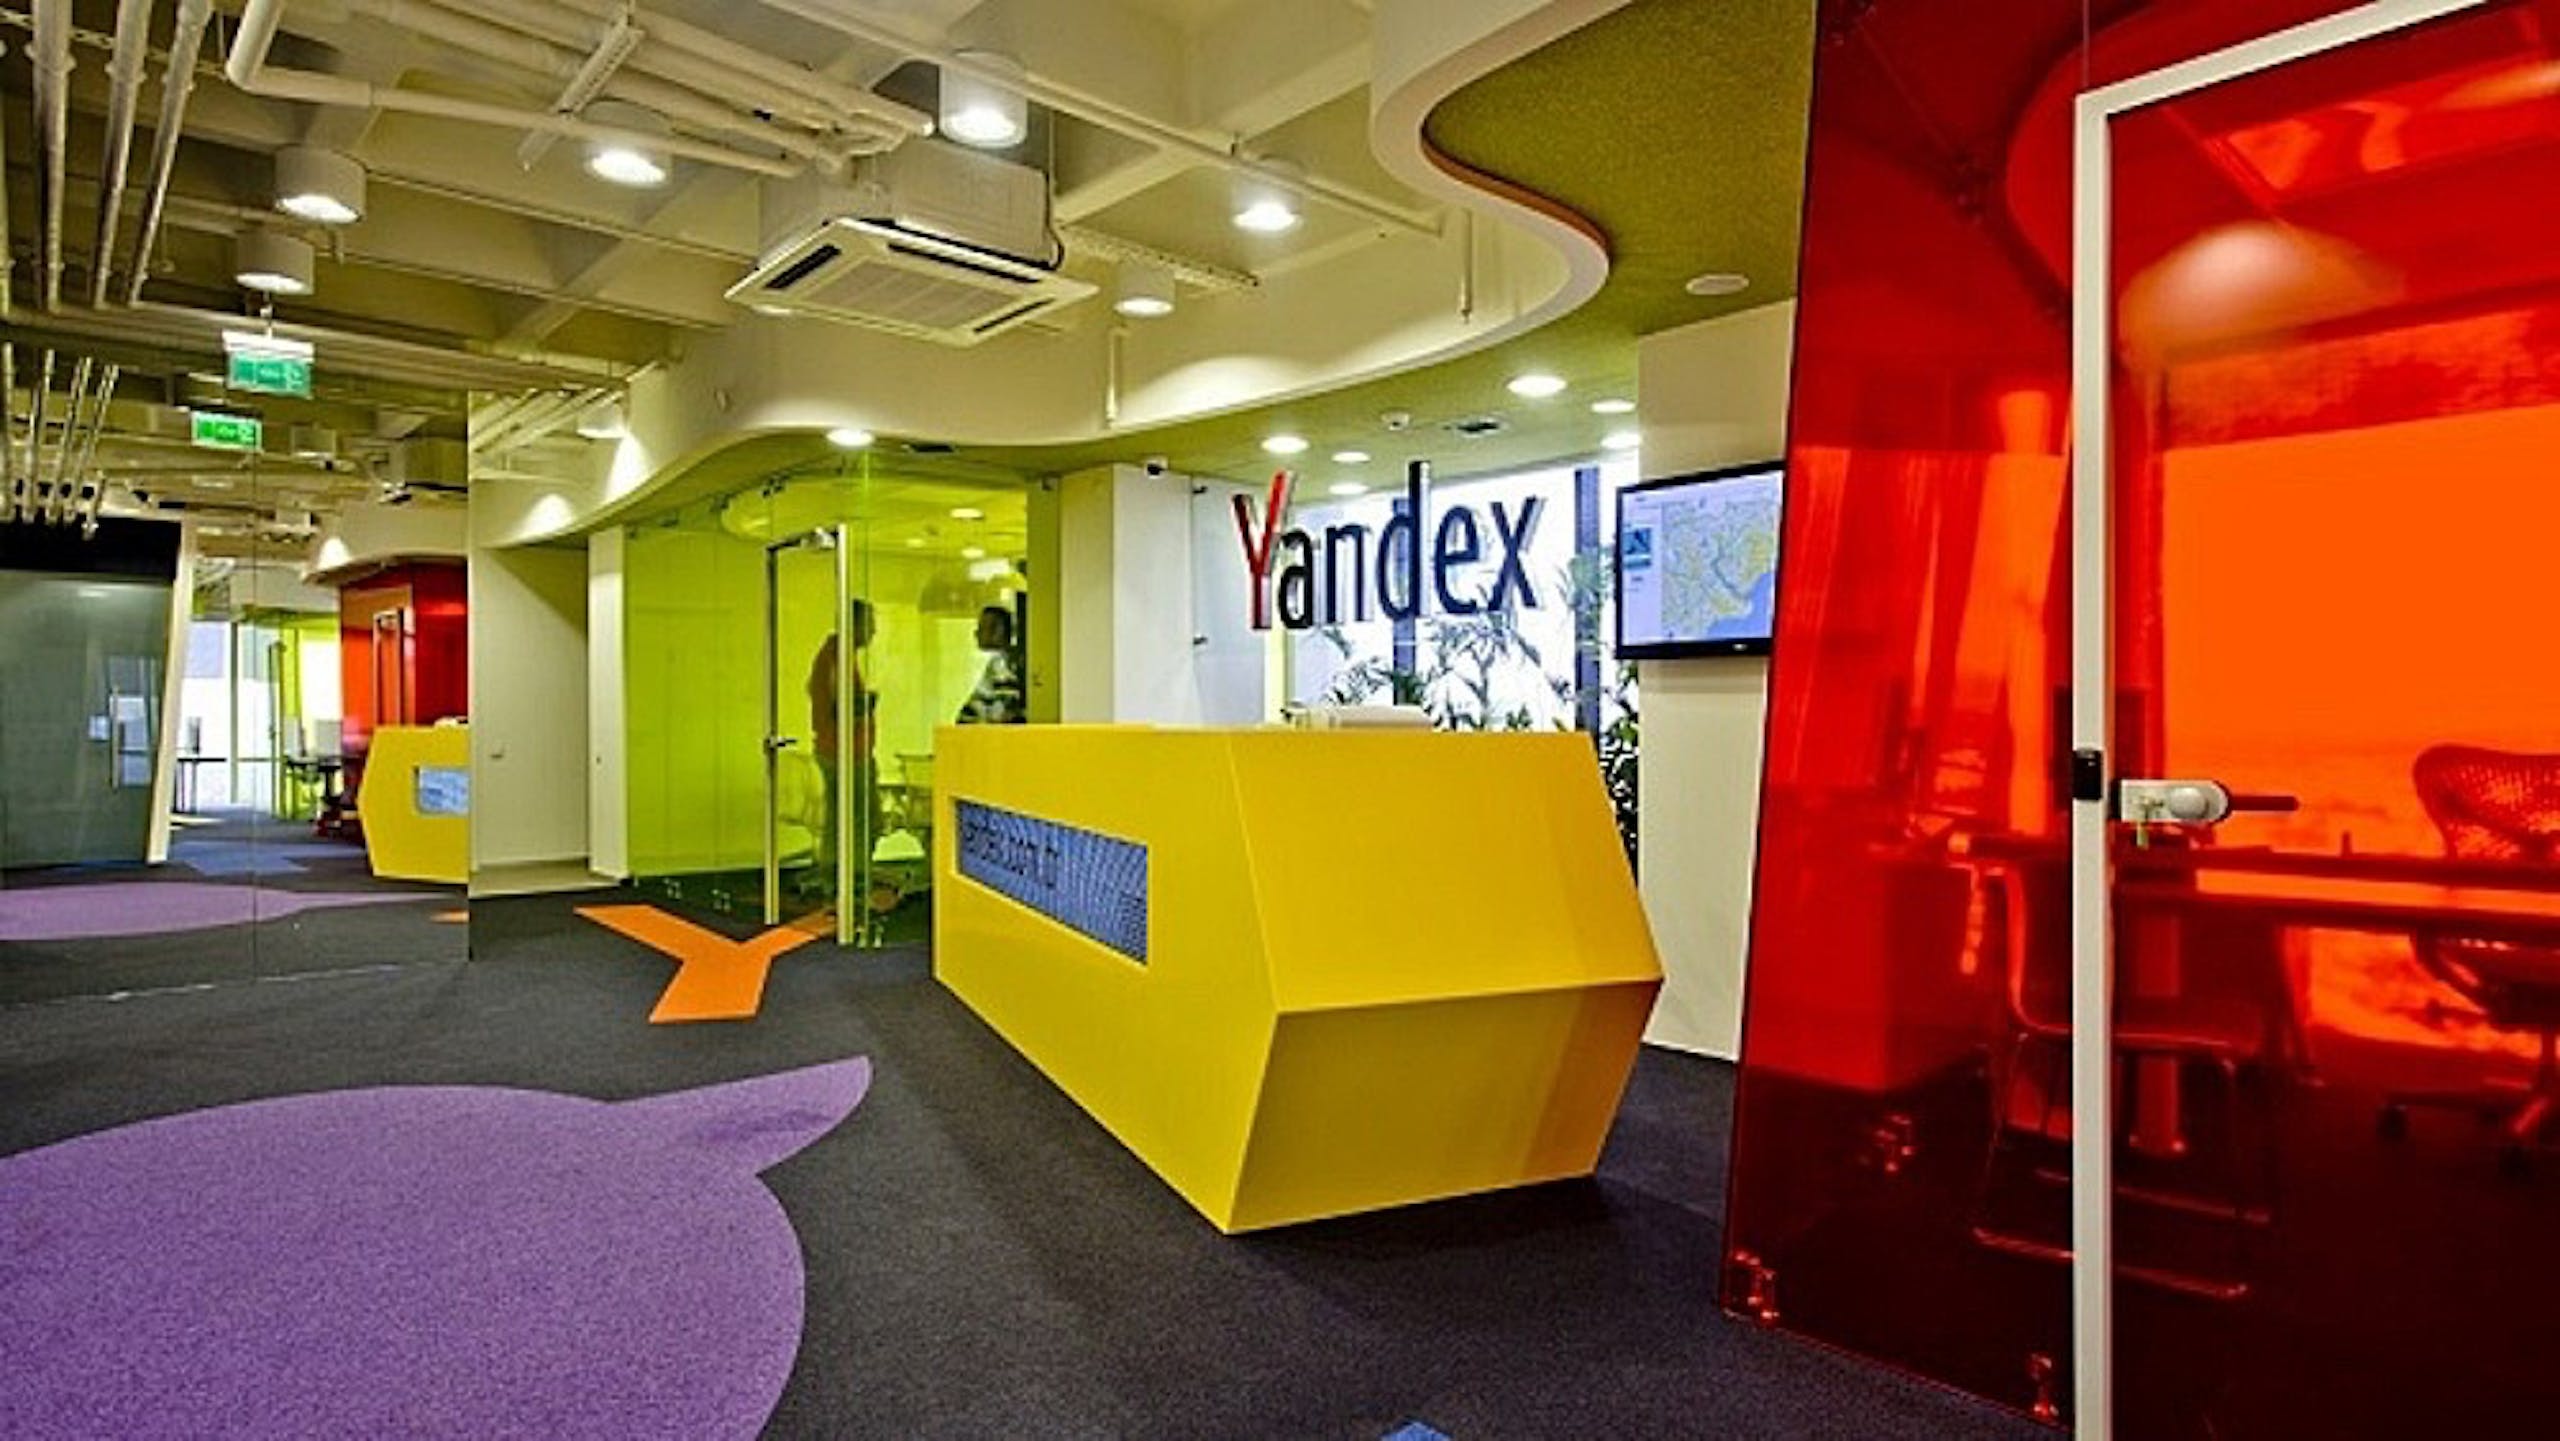 照片中提到了Yandex，跟Yandex有關，包含了Yandex 公司、商業、莫斯科